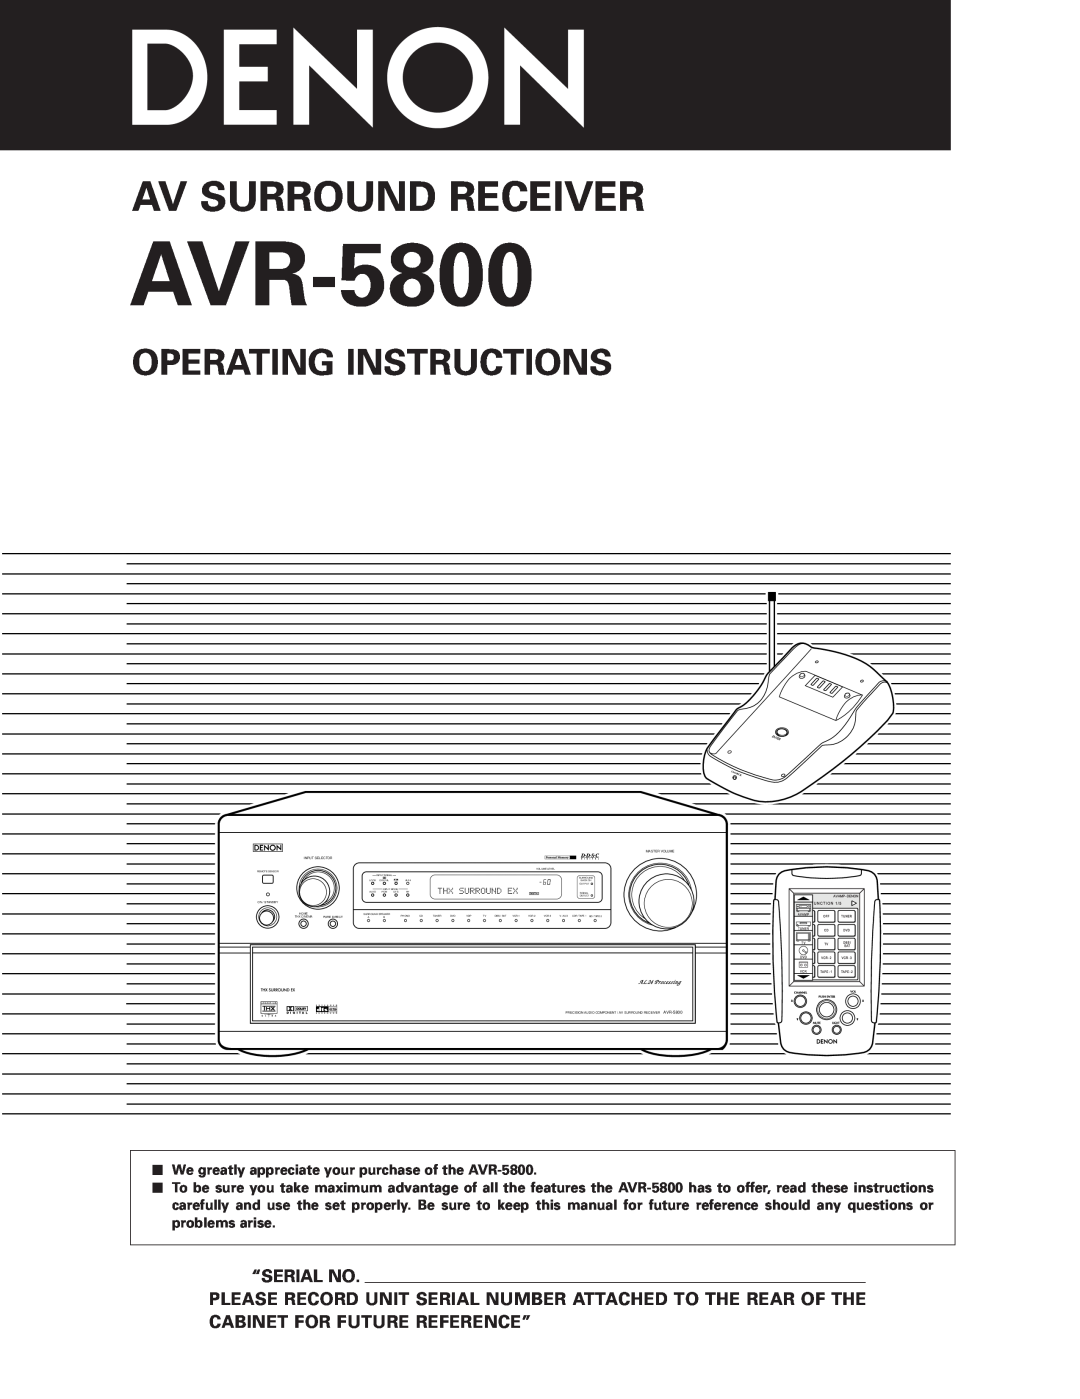 Denon AVR-5800 operating instructions Operating Instructions, “Serial No, Av Surround Receiver 